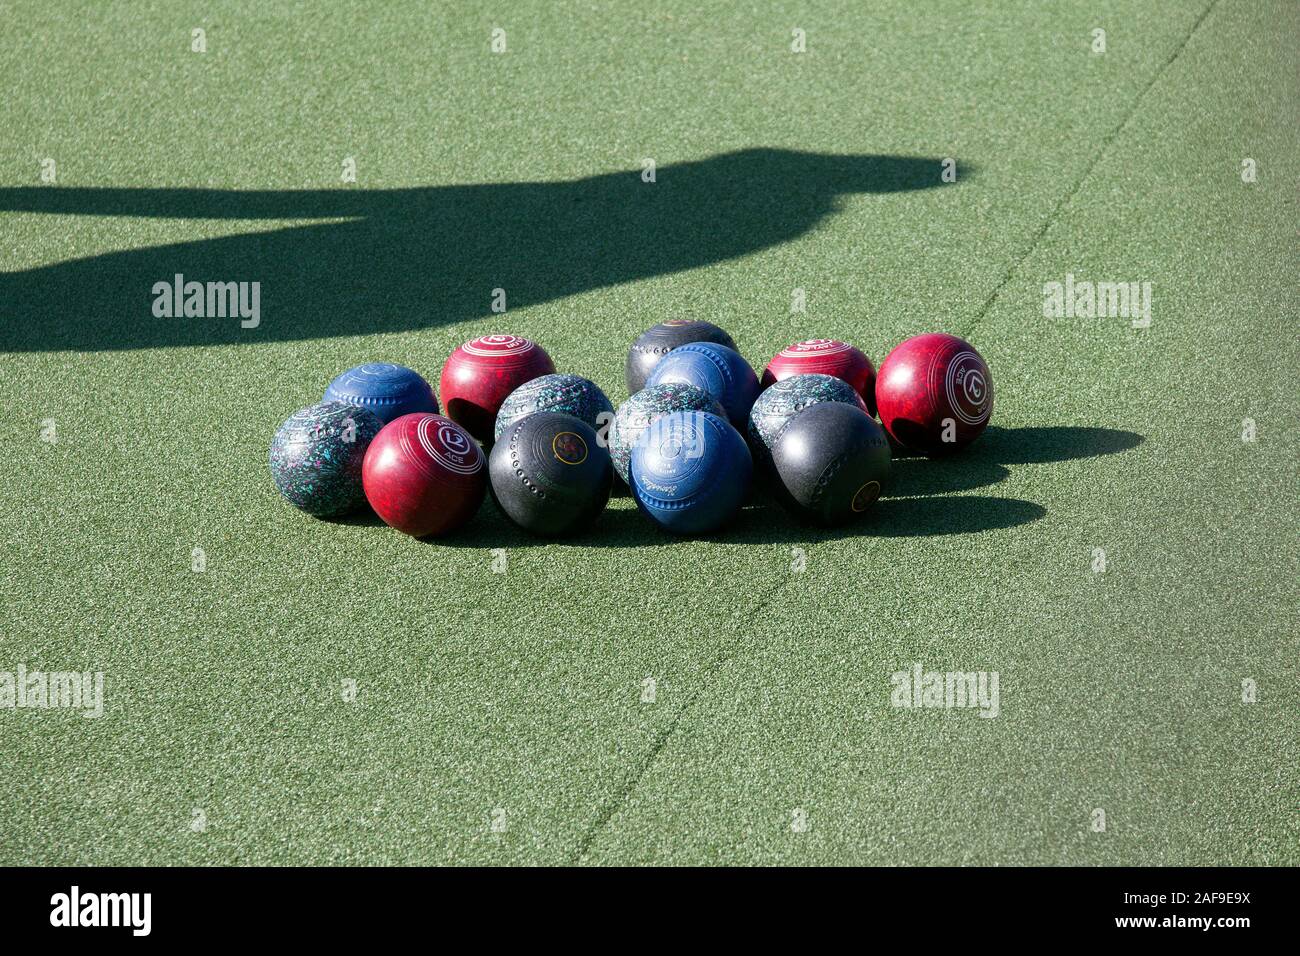 Lawn Bowling Balls Stock Photo